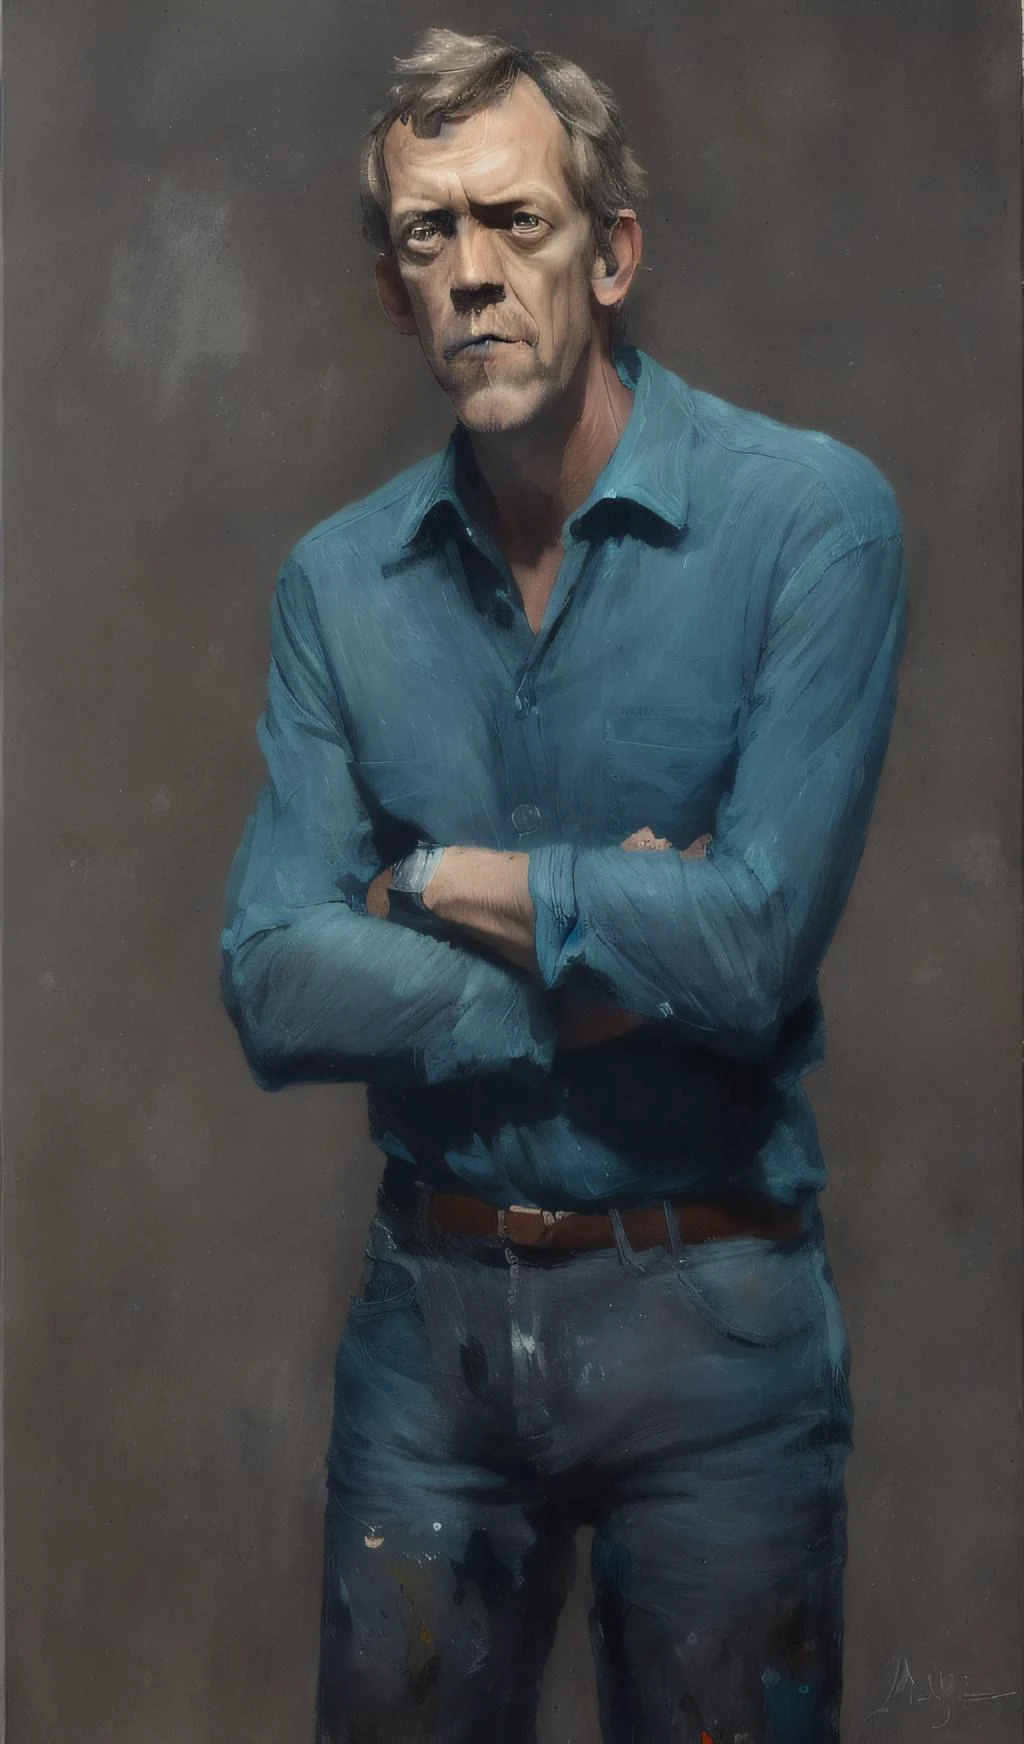 (pintura por mse) retrato de uma foto premiada de Hugh Laurie posando em um estúdio escuro, (iluminação de aro,:1.4) iluminação em dois tons, foco nitído, tom verde-azulado, octano, irreal, mal iluminado, sutil,, altamente detalhado, foco nitído, profissional, 4K, detalhe máximo, alta resolução, Alto detalhe, foco nitído, suave, estética, extremamente detalhado, photorealista, realista, Pós-processamento,  8K, Ultra HD,